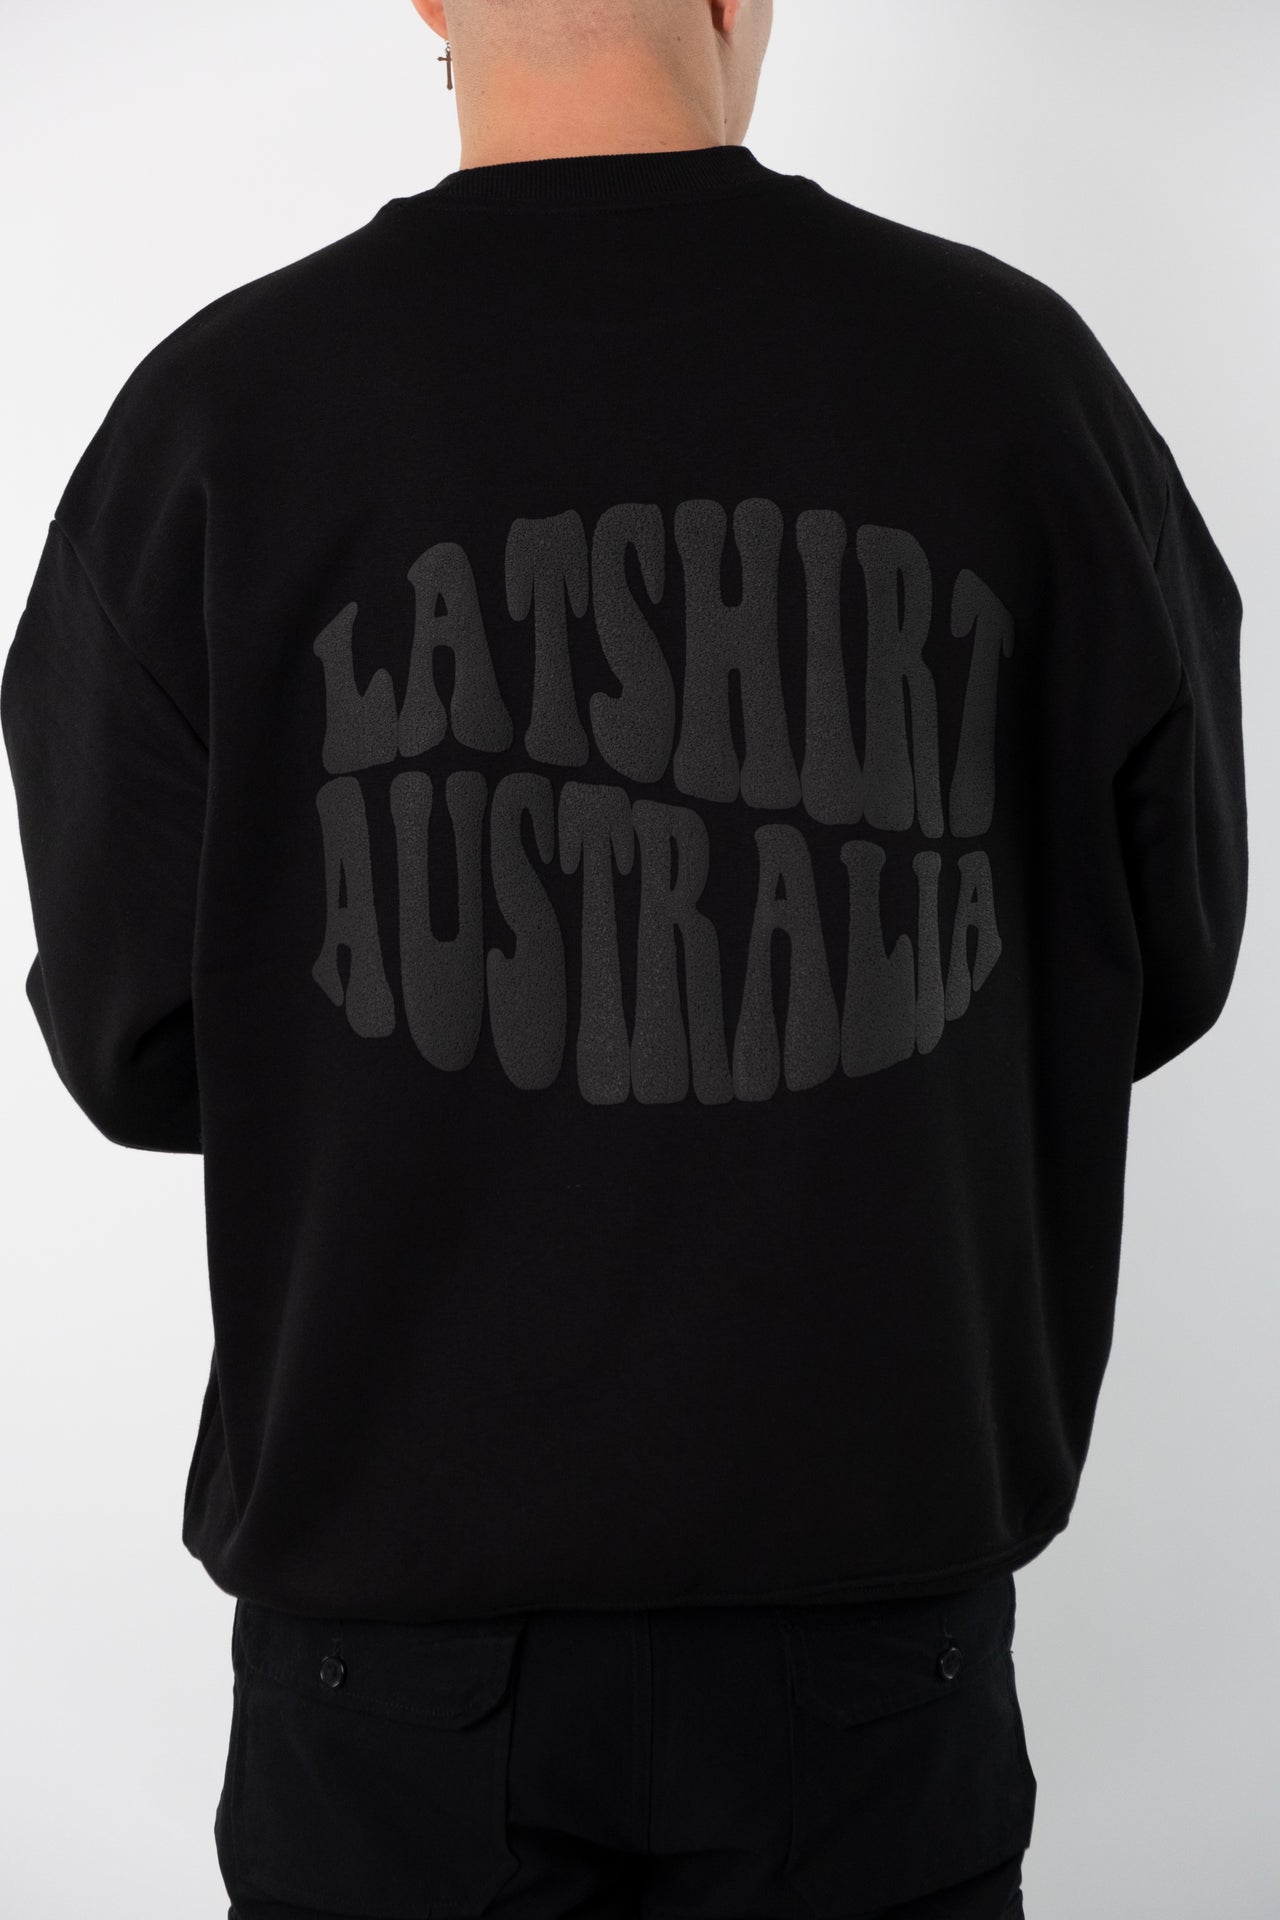 LaTshirt Australia Sweatshirt